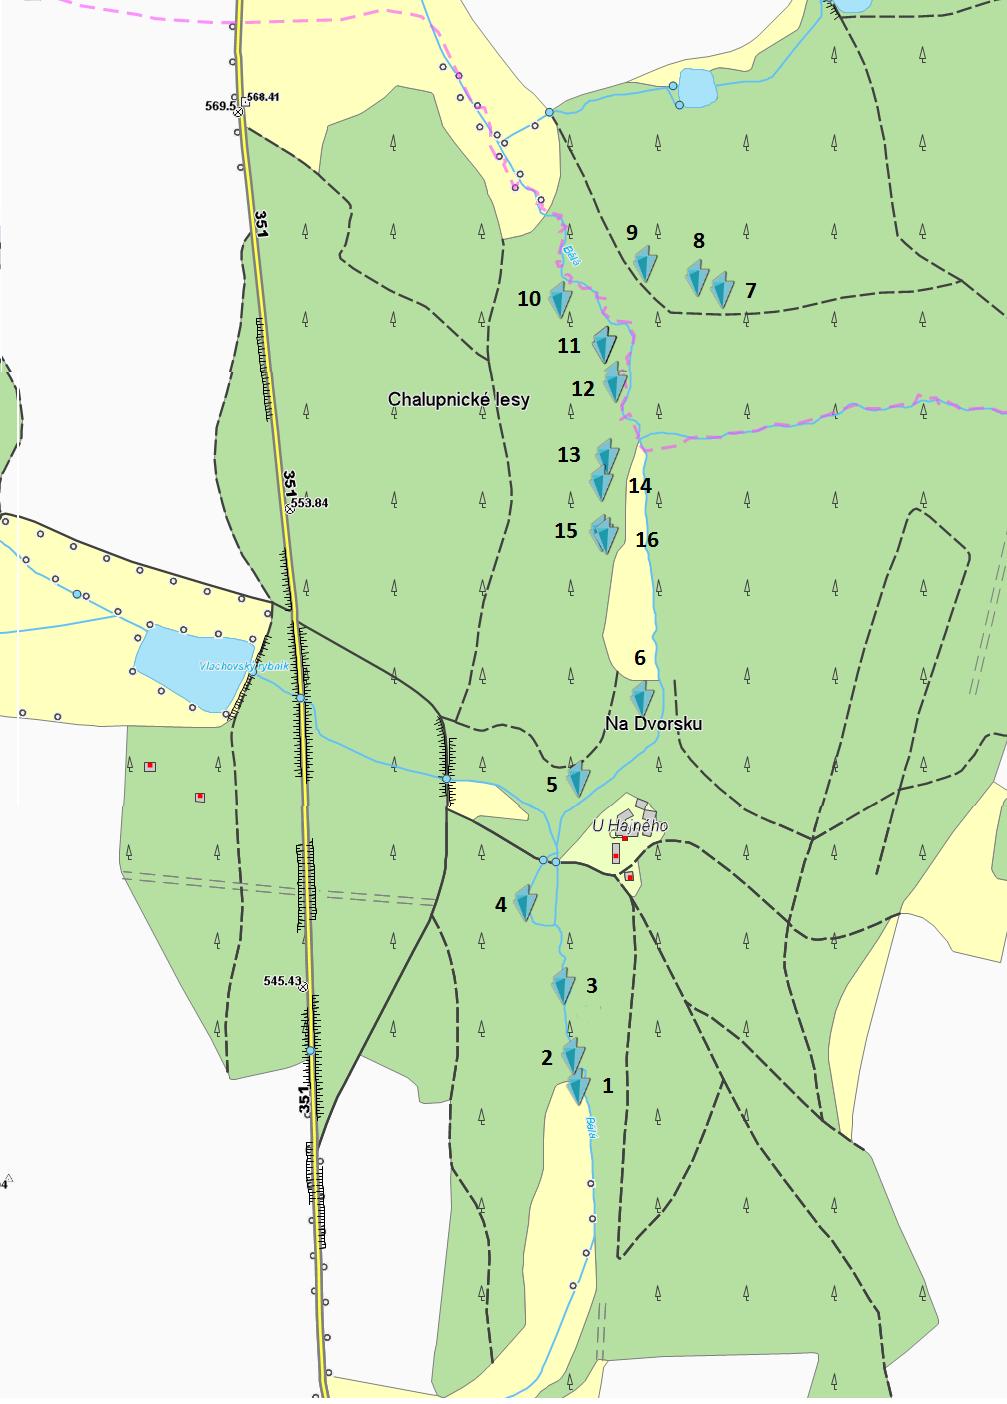 Obrázek 3: Mapa lokalizovaných terénních nerovností Zdroj: Prohlížecí služba WMTS - Základní mapy